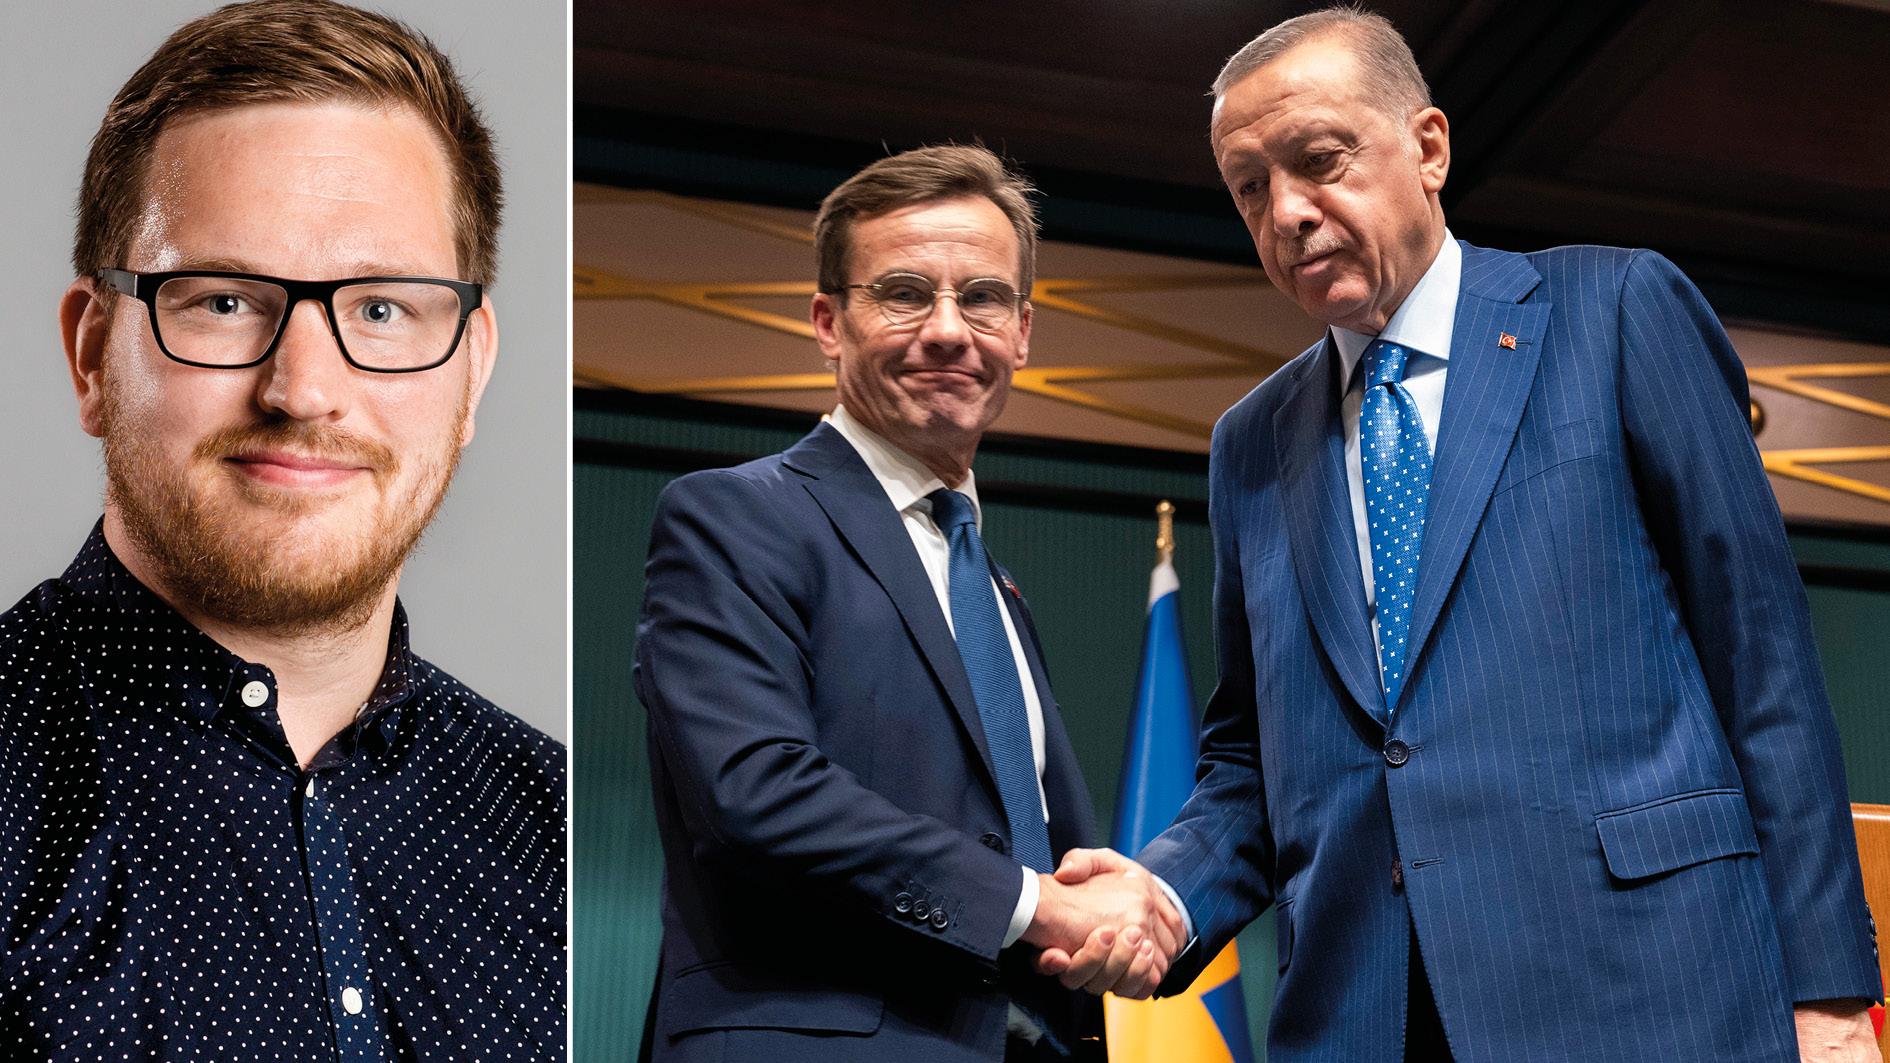 Den förra regeringen valde en eftergiftspolitik i Natoprocessen som har satt Sverige i ett sämre säkerhetspolitiskt läge. Under den nuvarande regeringen har situationen bara förvärrats. Nu måste Sverige visa på lugn och stabilitet, skriver Håkan Svenneling.